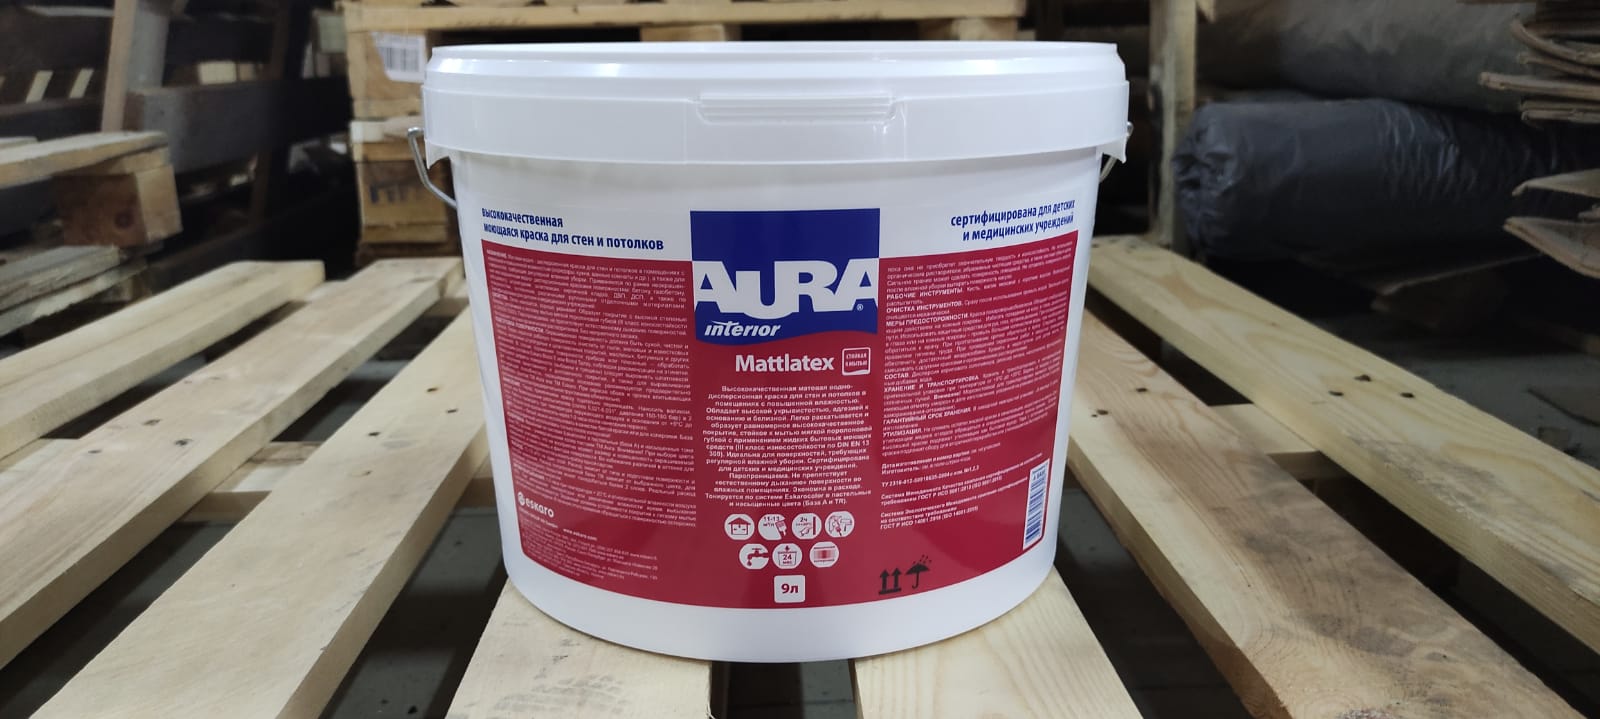 Краска моющаяся для стен и потолков AURA Mattlatex Interior / Аура Матлатекс 9 л (база TR)